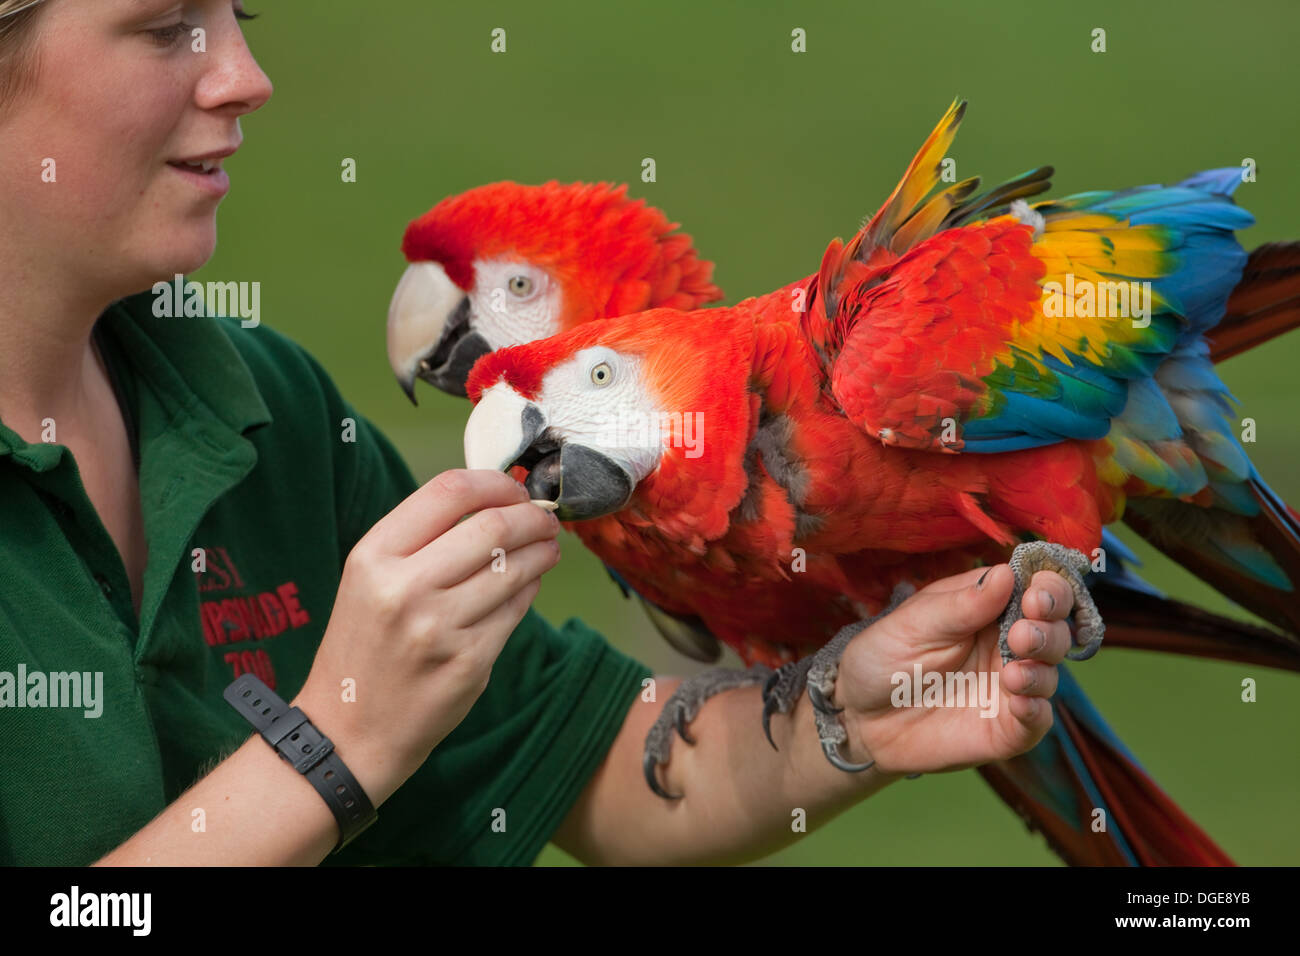 Las guacamayas rojas (Ara macao). En el brazo de su explicativa, que utiliza sus comportamientos naturales para demostrar las cuestiones de conservación. Foto de stock